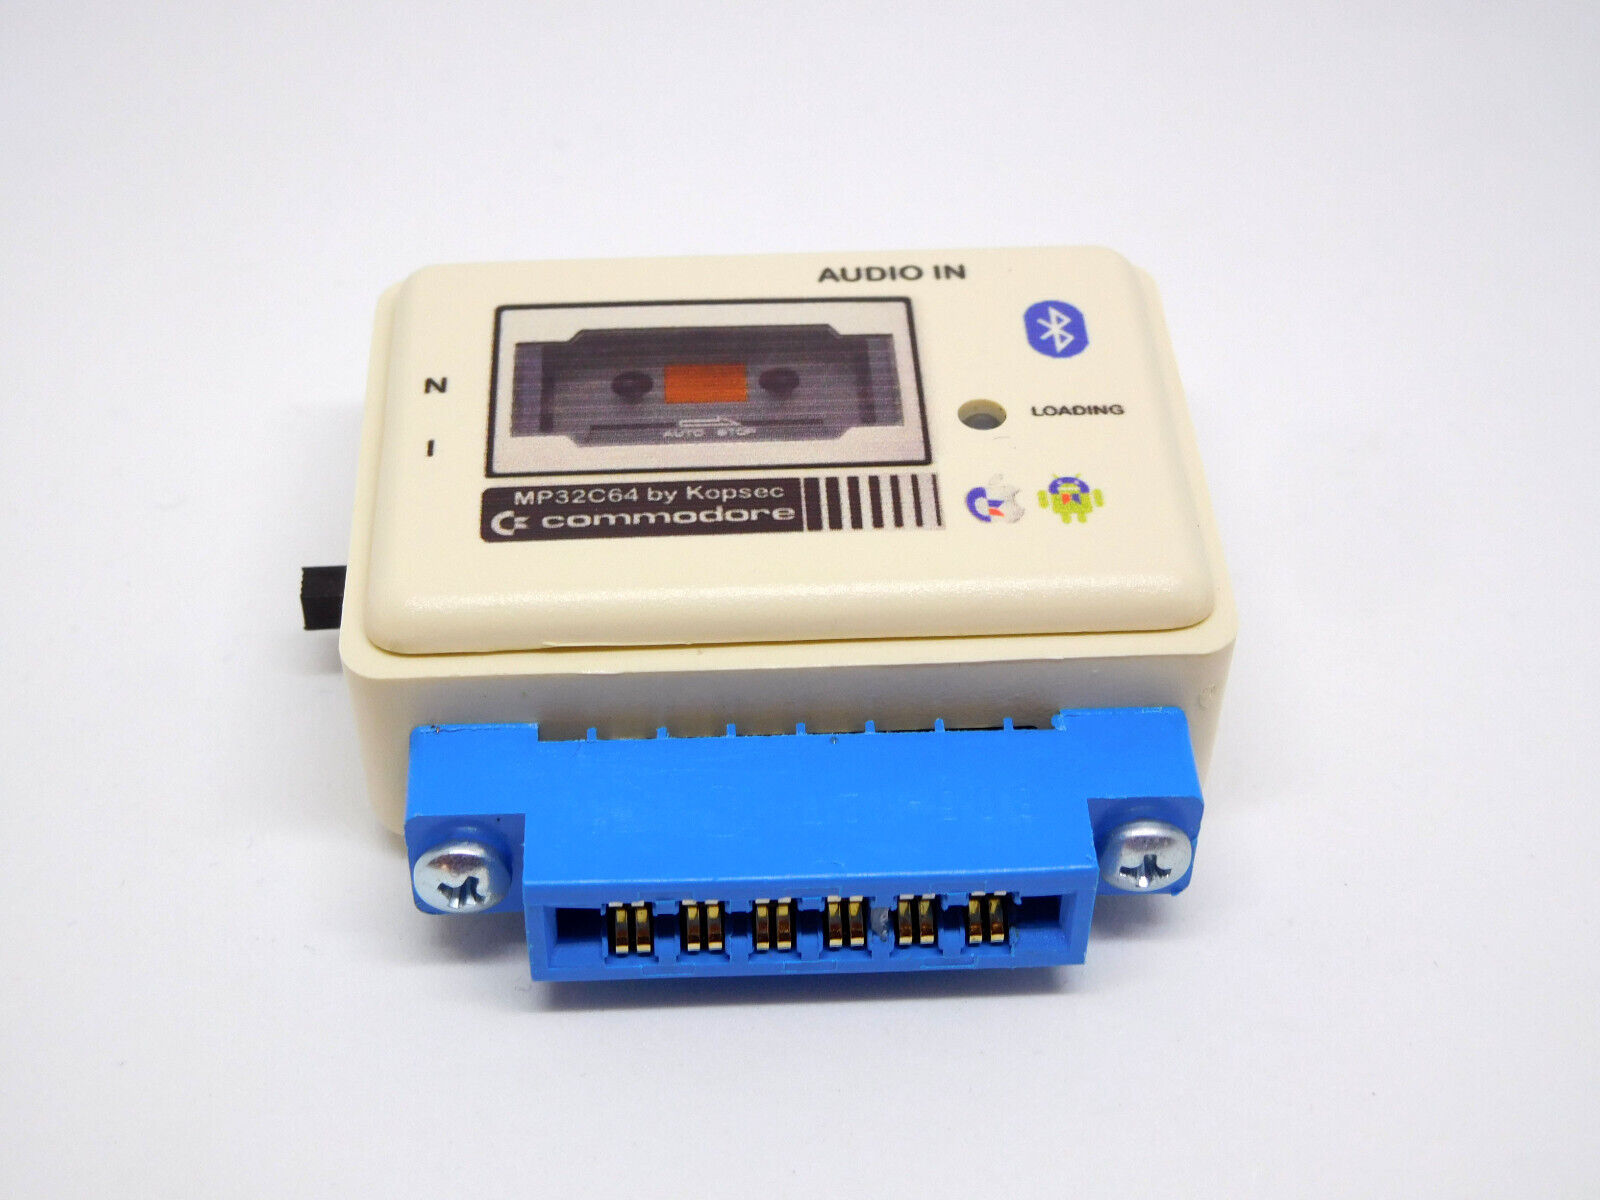 MP32C64 Bluetooth Commodore 64 Datassette Emulator+306 Games C64,C128,VIC20